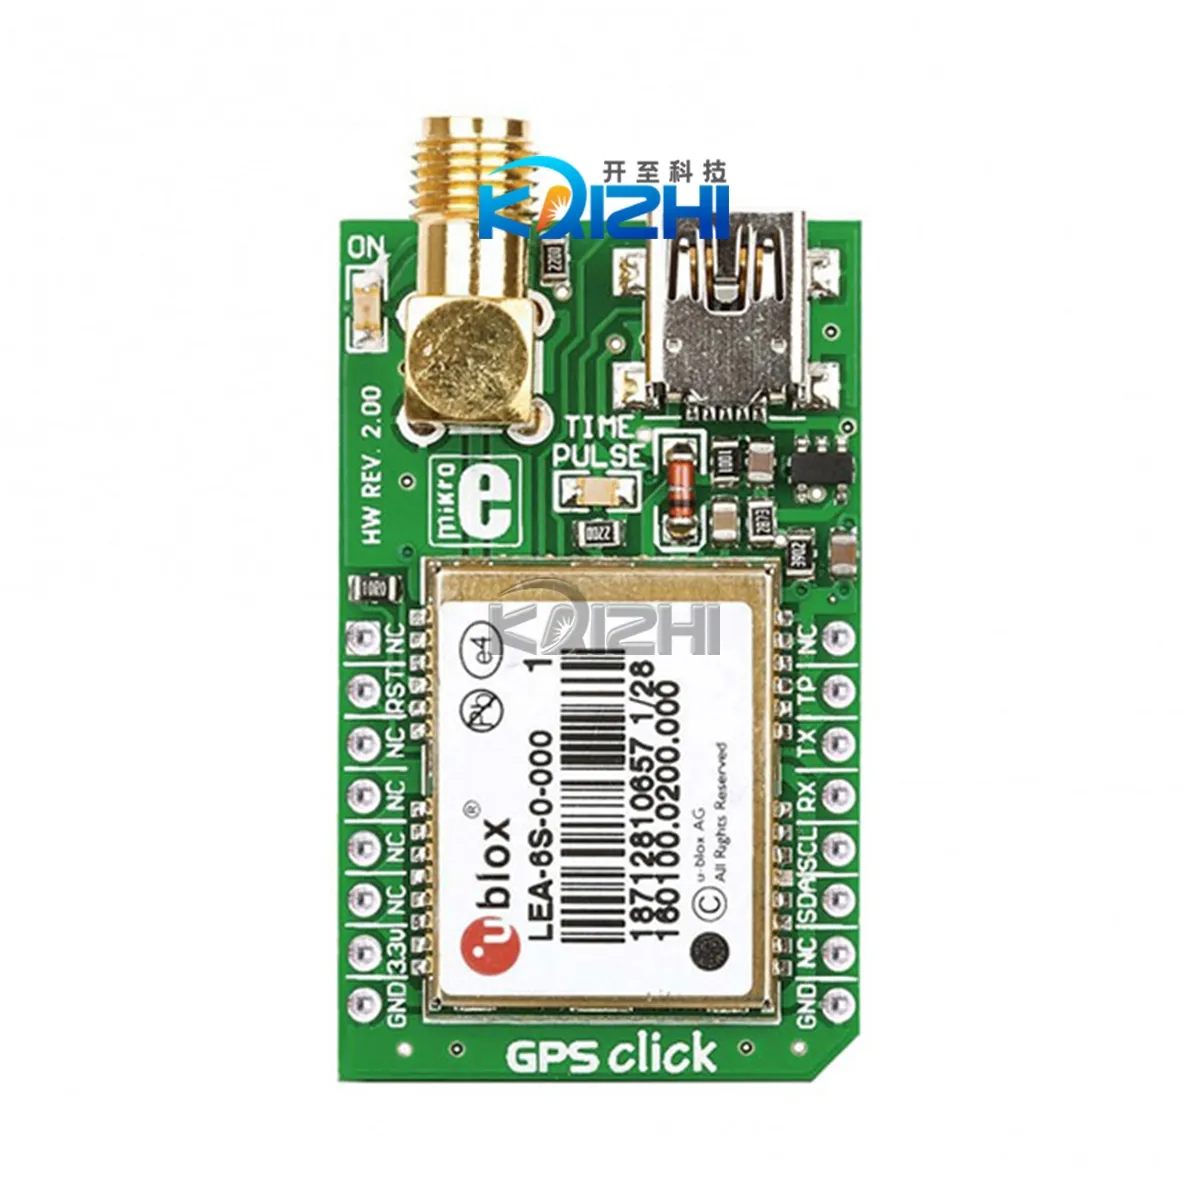 Placa GPS CLICK UART/I2C MIKROE-1032 ORIGINAL da marca em estoque